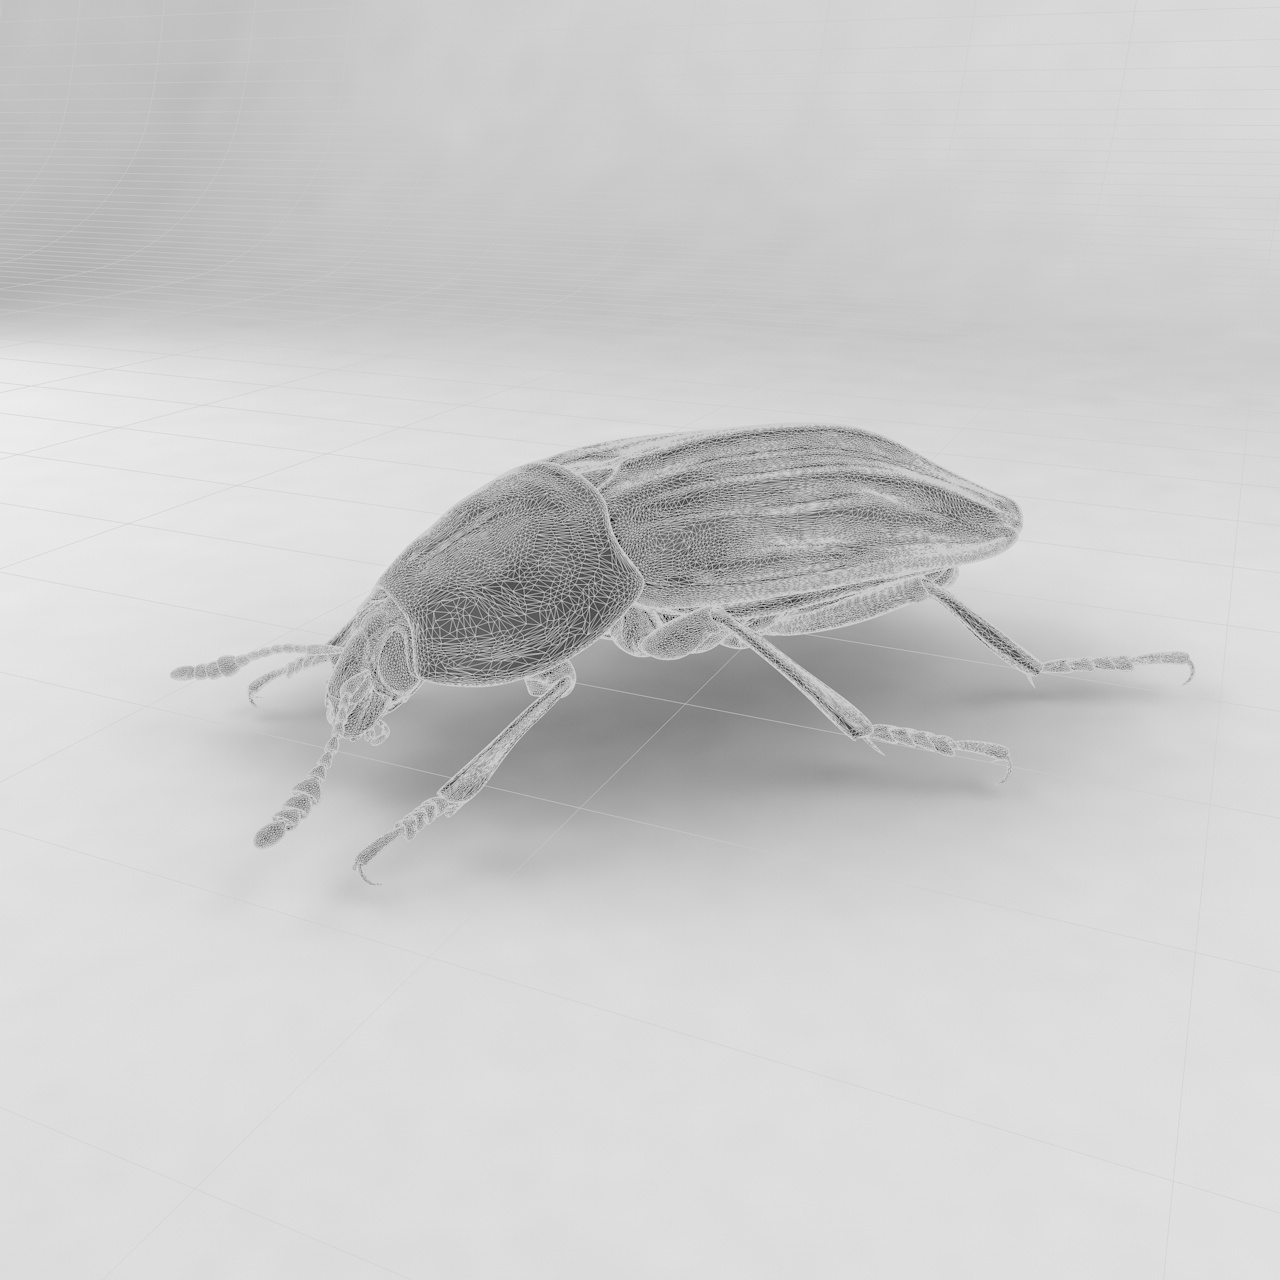 Leş böceği böcek böcekleri 3d modeli